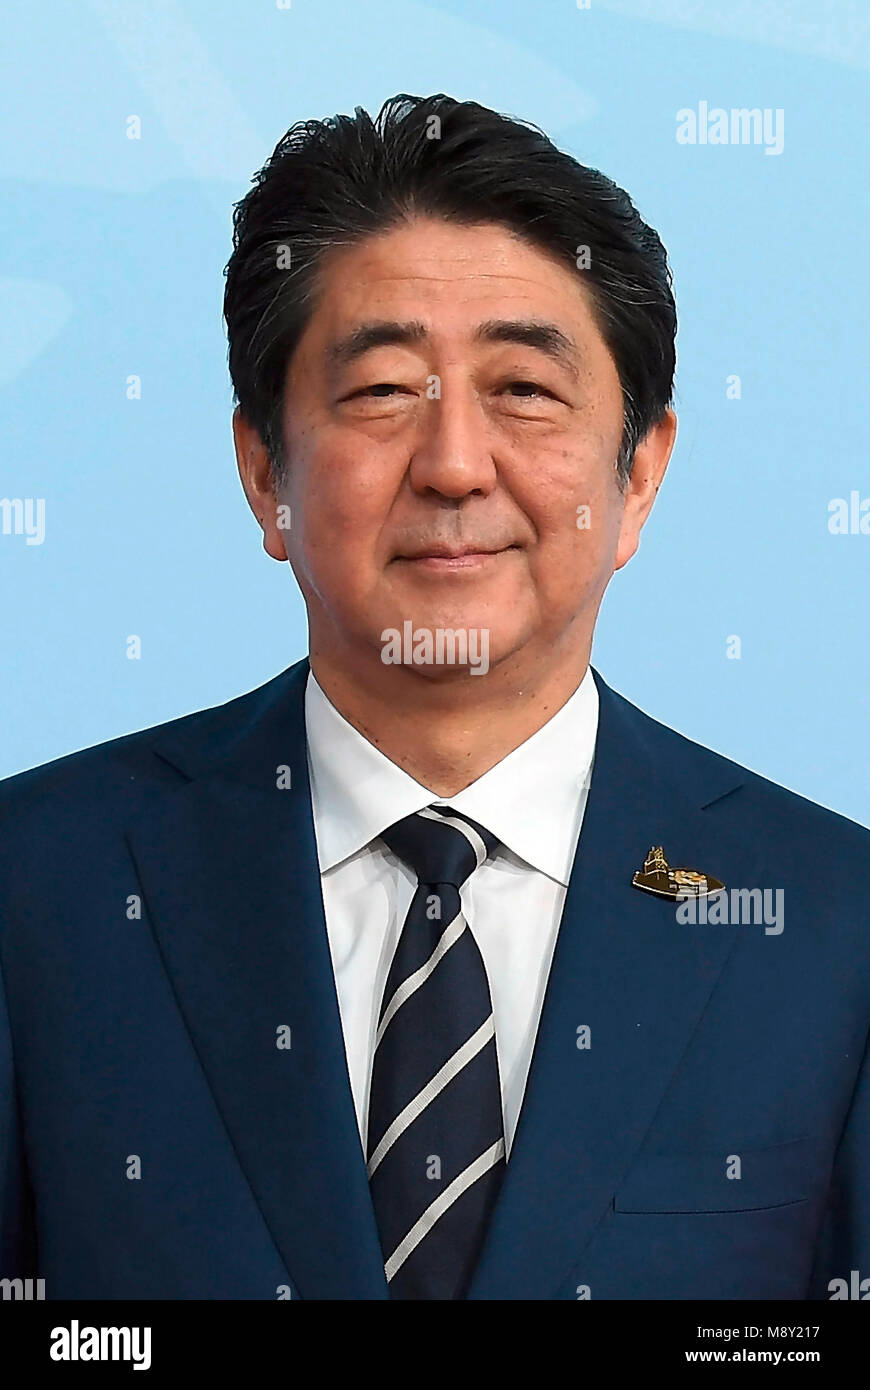 Shinzo Abe - * 21.09.1954 - político japonés, Primer Ministro de Japón y líder del Partido Liberal Democrático de Japón LDP. Foto de stock